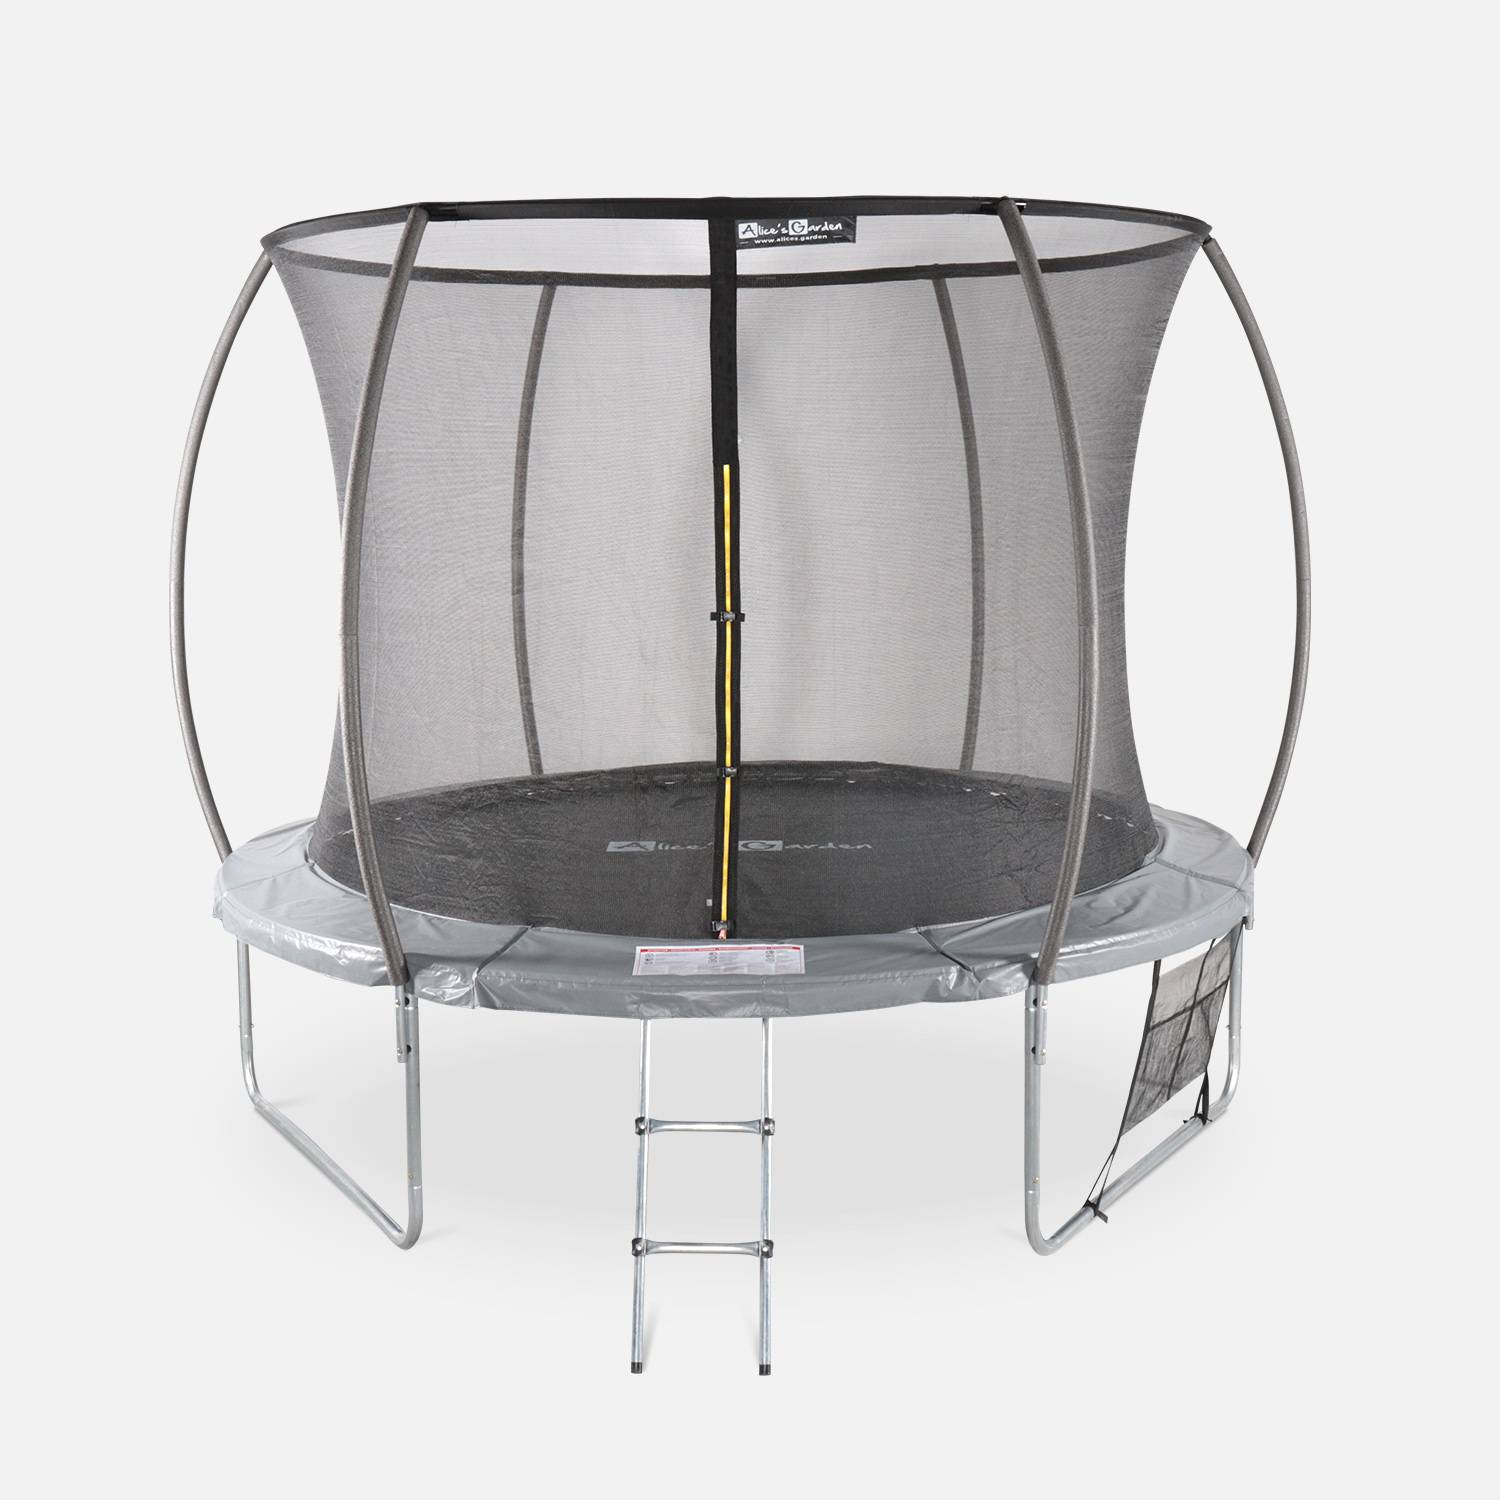 Trampoline Ø 305cm - Mars Inner XXL- trampoline de jardin gris avec filet de protection intérieur, échelle, bâche, filet pour chaussures et kit d'ancrage 3,05m 305cm Photo2